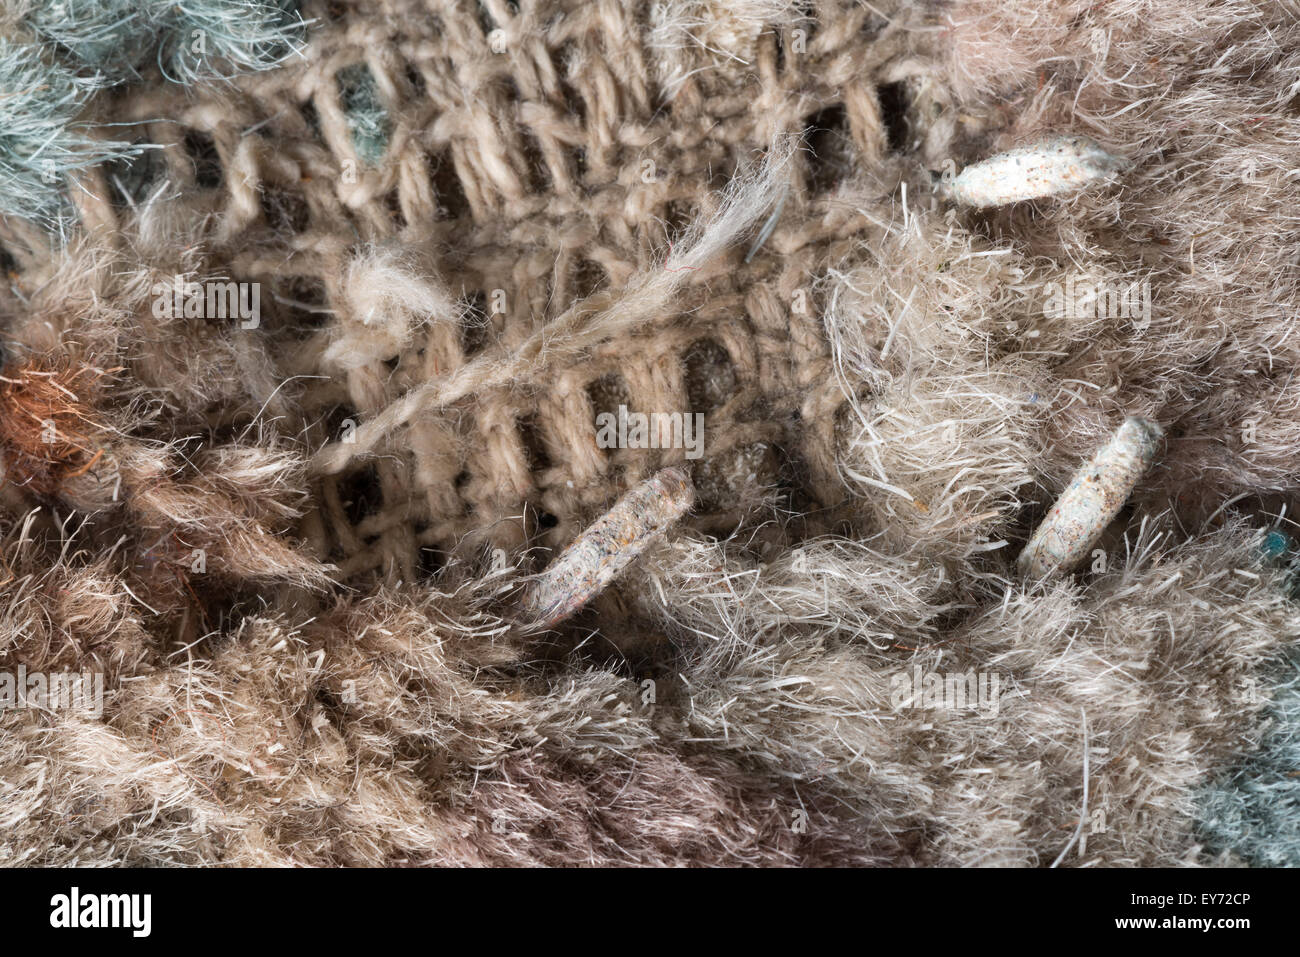 Gehäuse mit Puppen leben Teppich Motten Larven eingehüllt in Schutzhülle  aus Wolle Fasern gegessen Teppich fast Erwachsenen Motten gemacht  Stockfotografie - Alamy